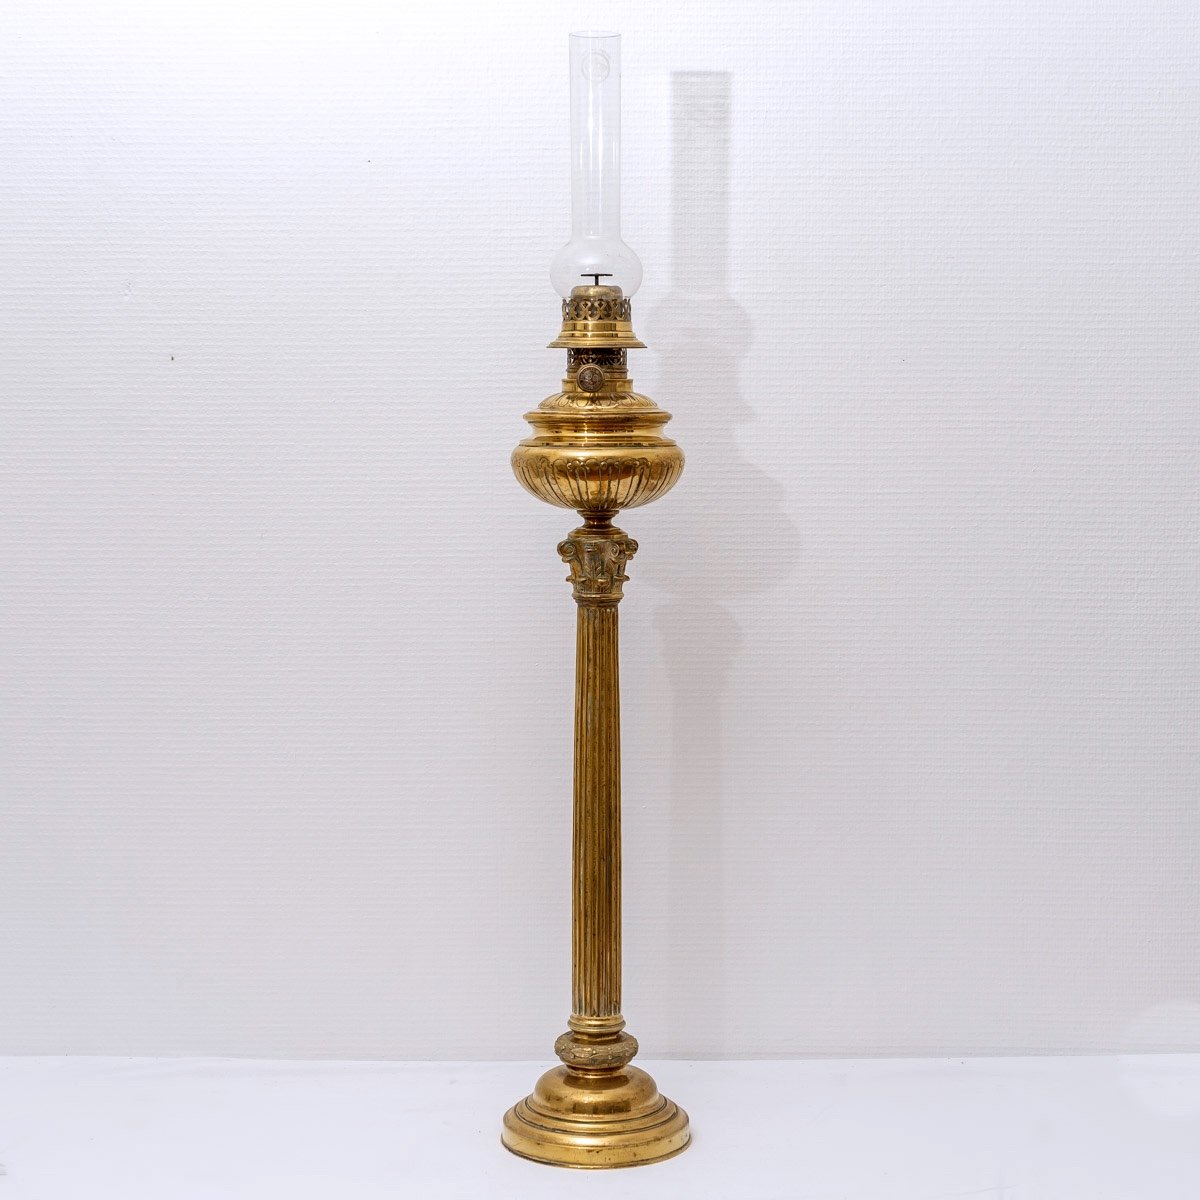 Importante Lampe à Pétrole Bronze - XIXème Siècle - Napoléon III